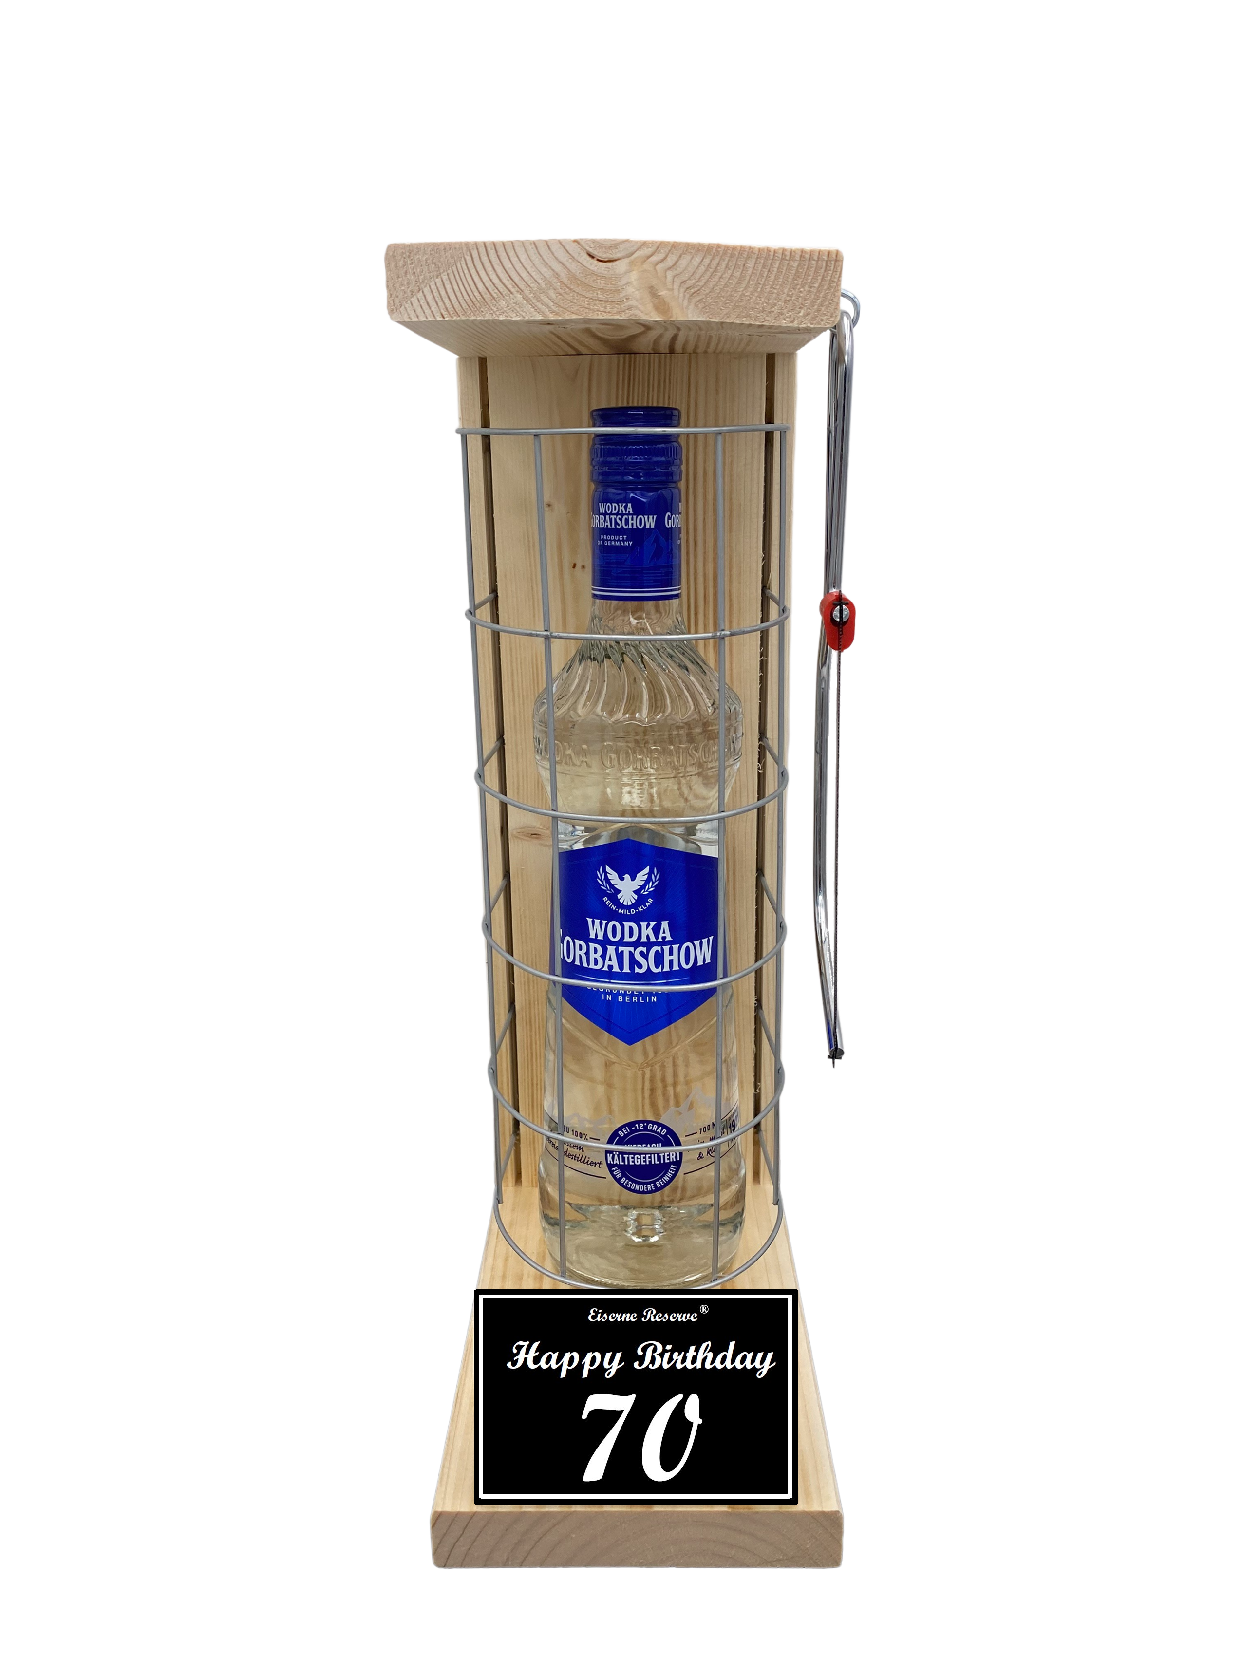 Wodka Geschenk zum 70 Geburtstag - Eiserne Reserve Gitterkäfig